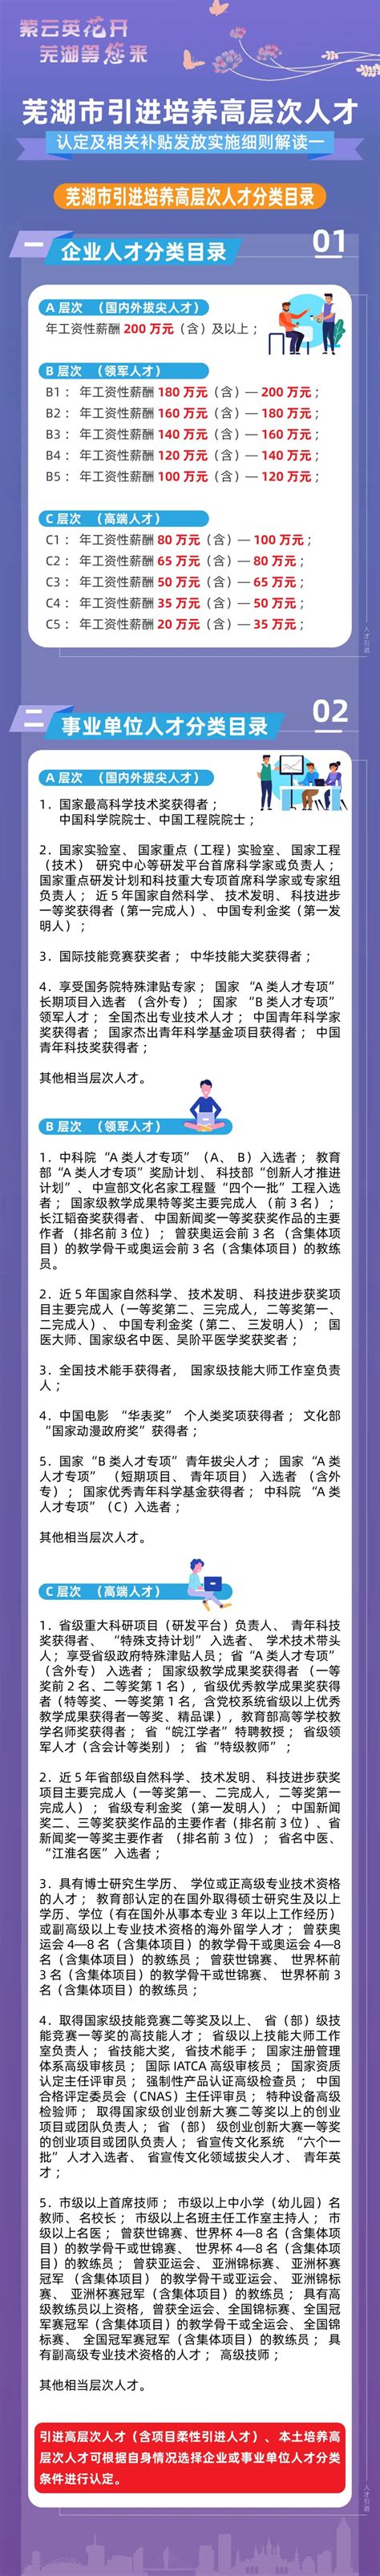 首页 - 芜湖纽浩智能装备有限责任公司